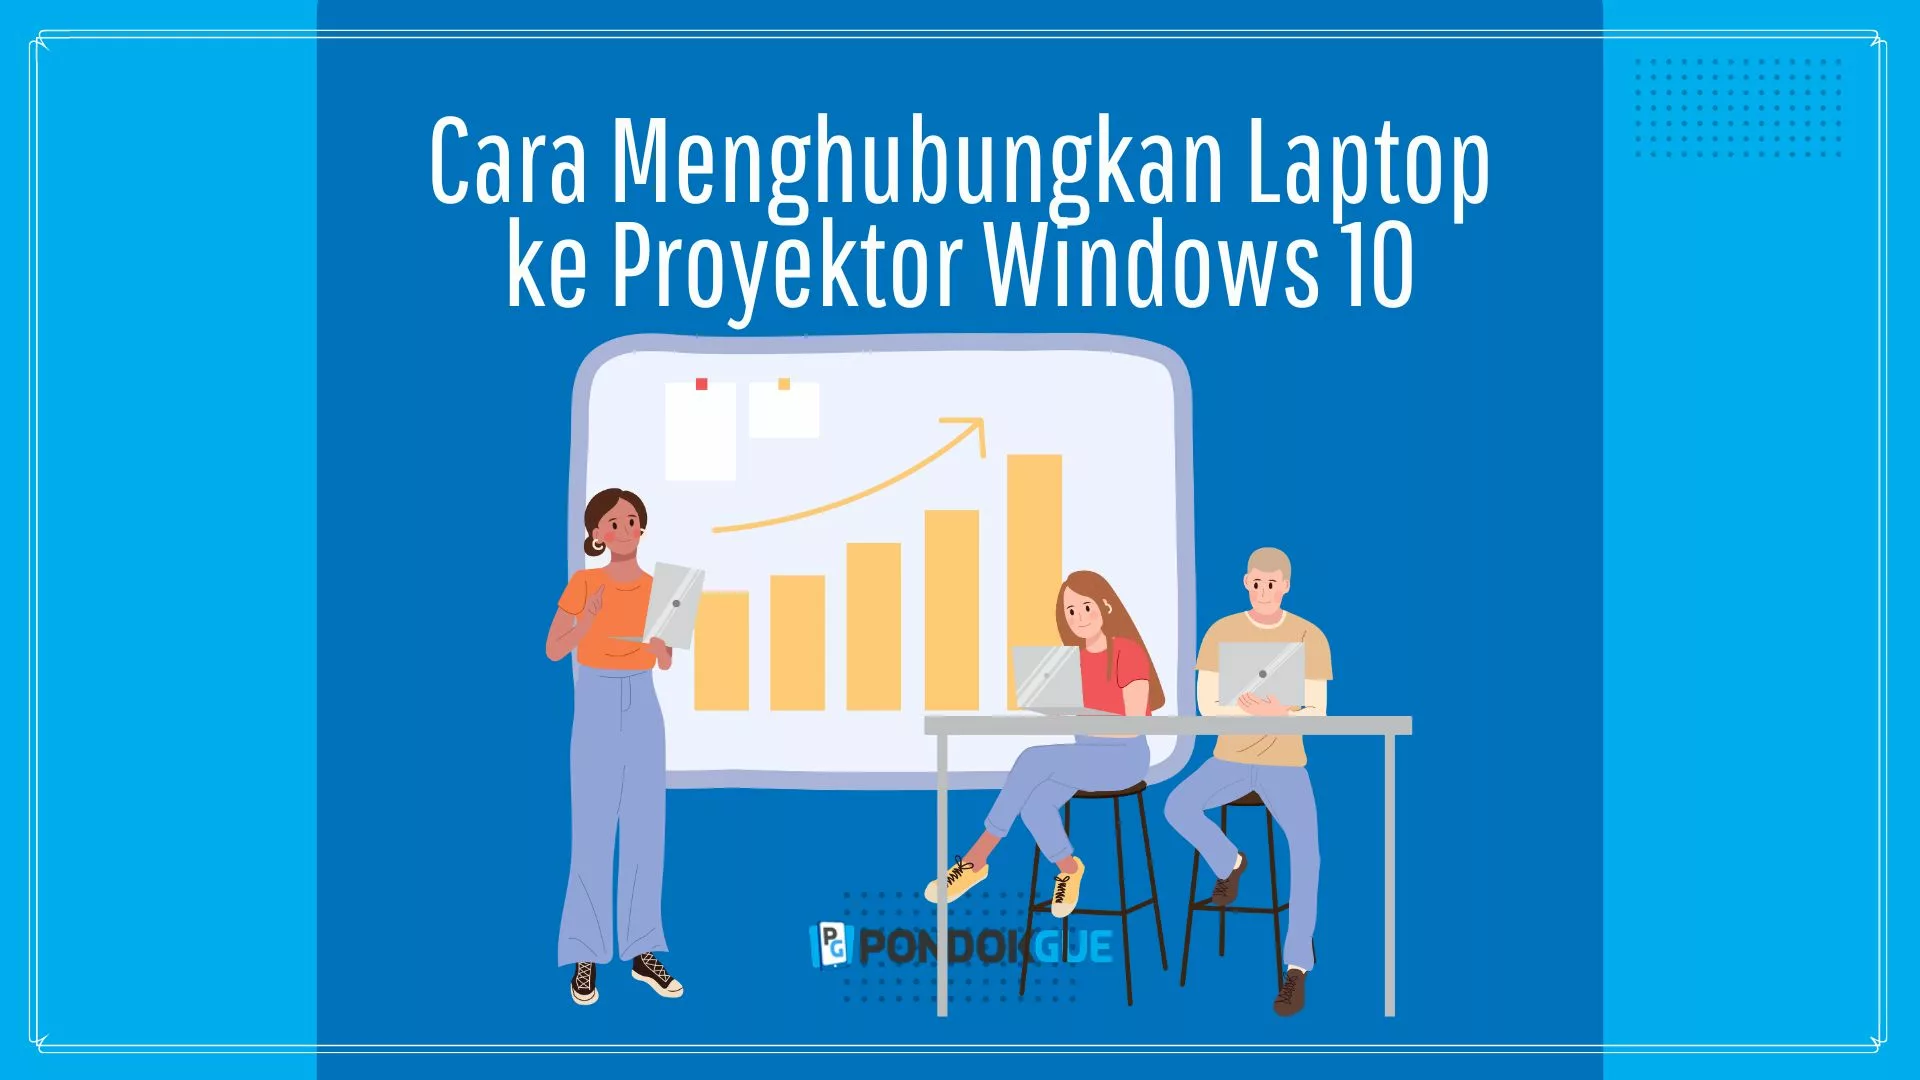 Cara Menghubungkan Laptop ke Proyektor Windows 10